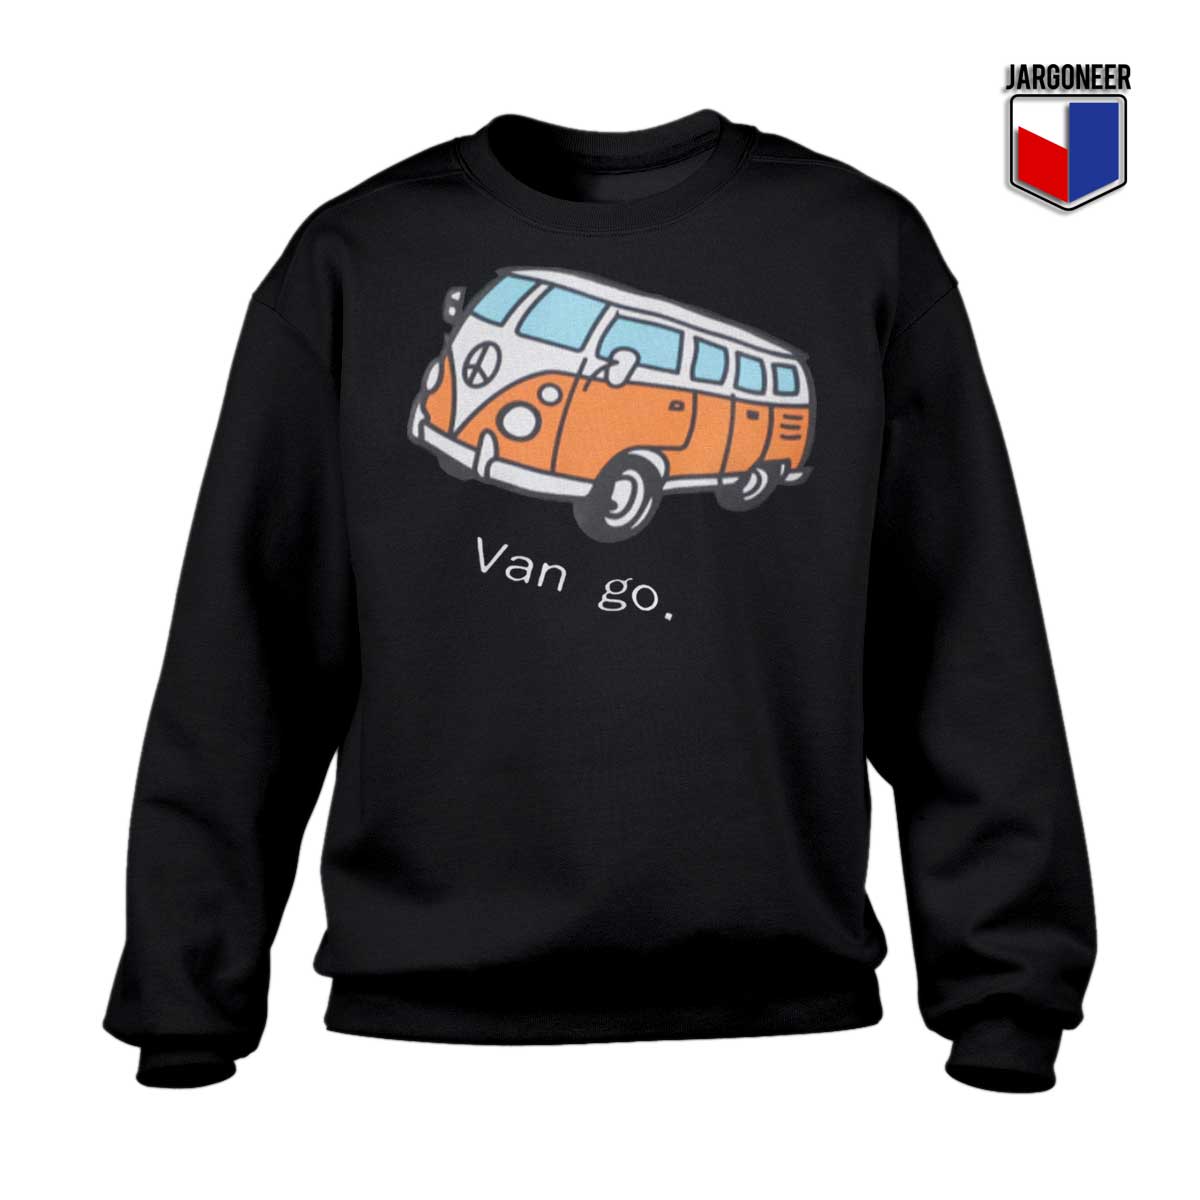 Car And Letter Van go Sweatshirt - Shop Unique Graphic Cool Shirt Designs